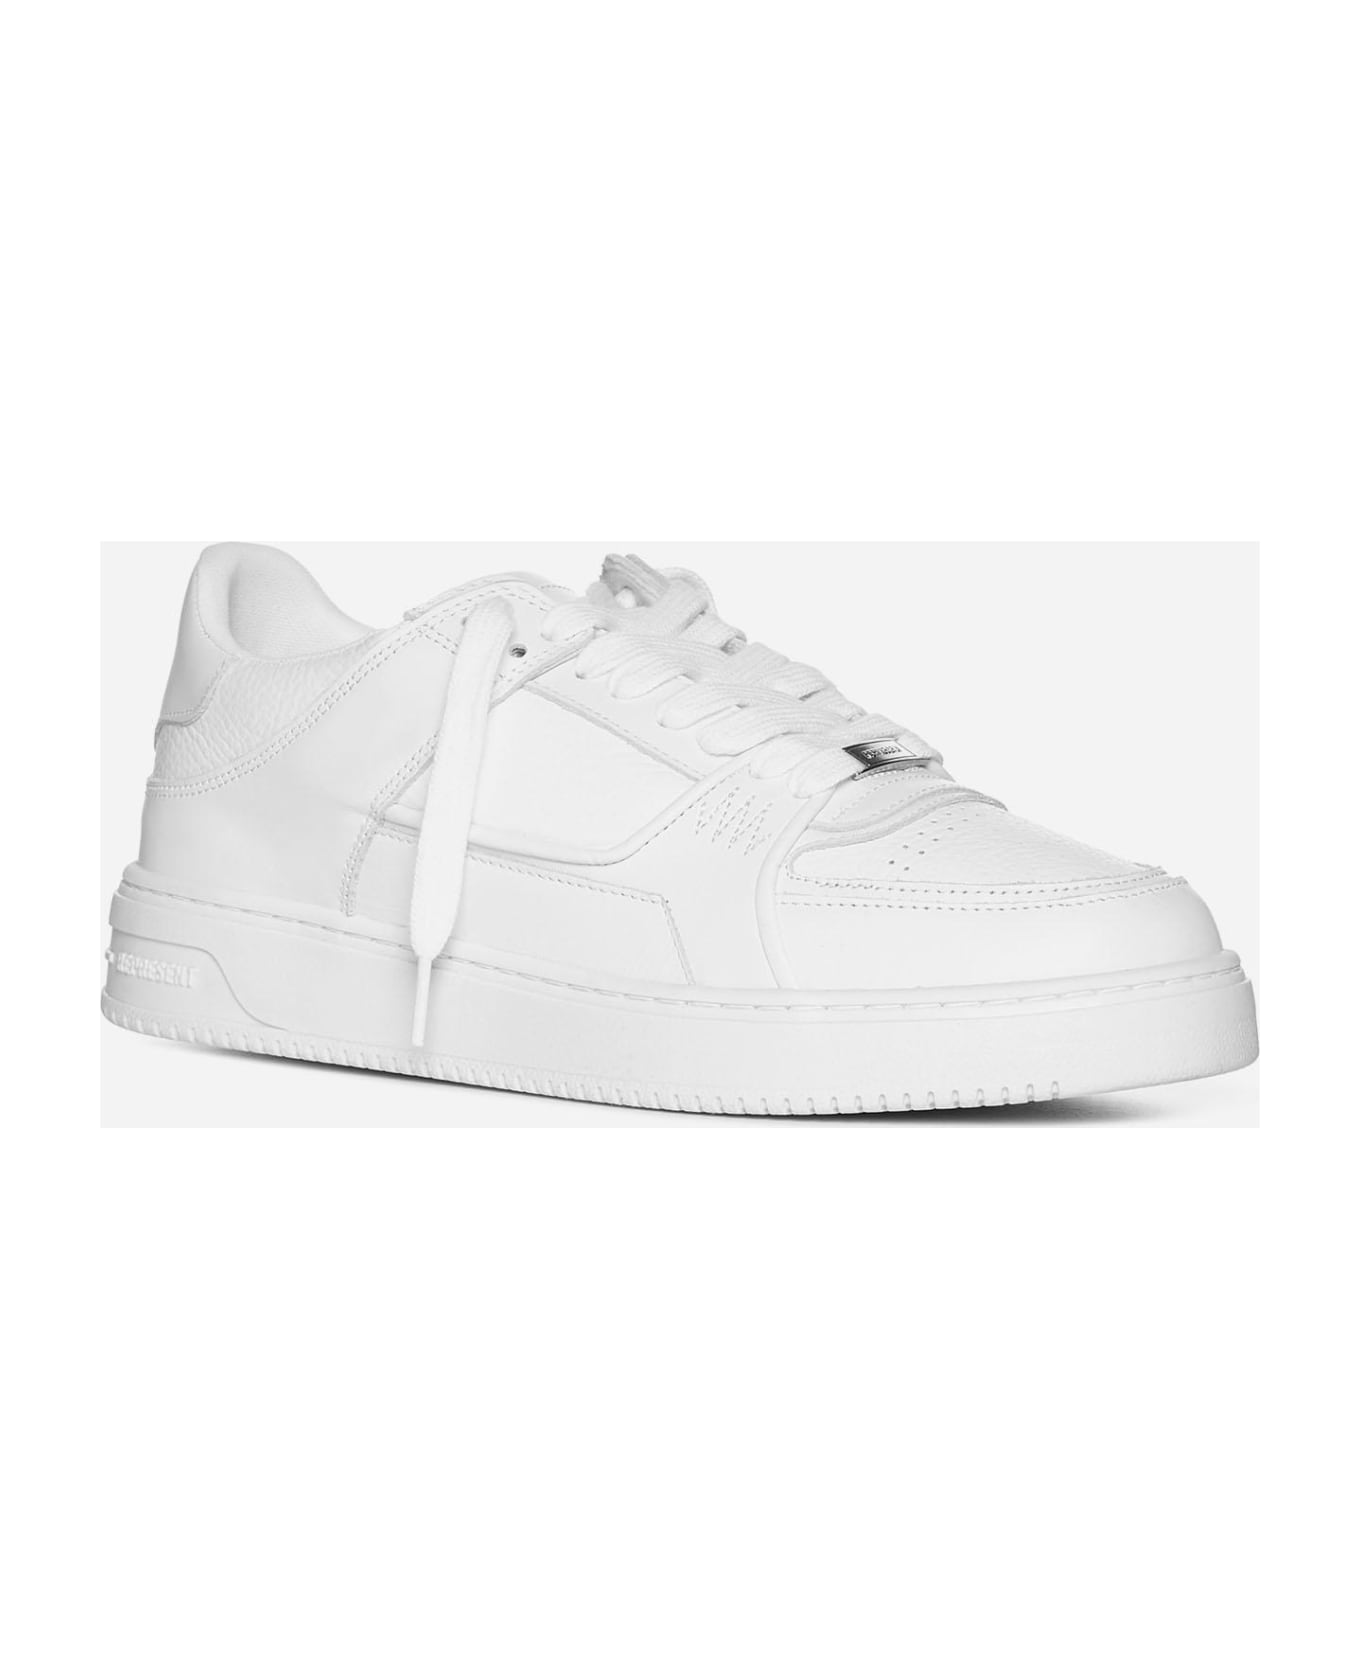 REPRESENT Apex Nappa Leather Sneakers - White